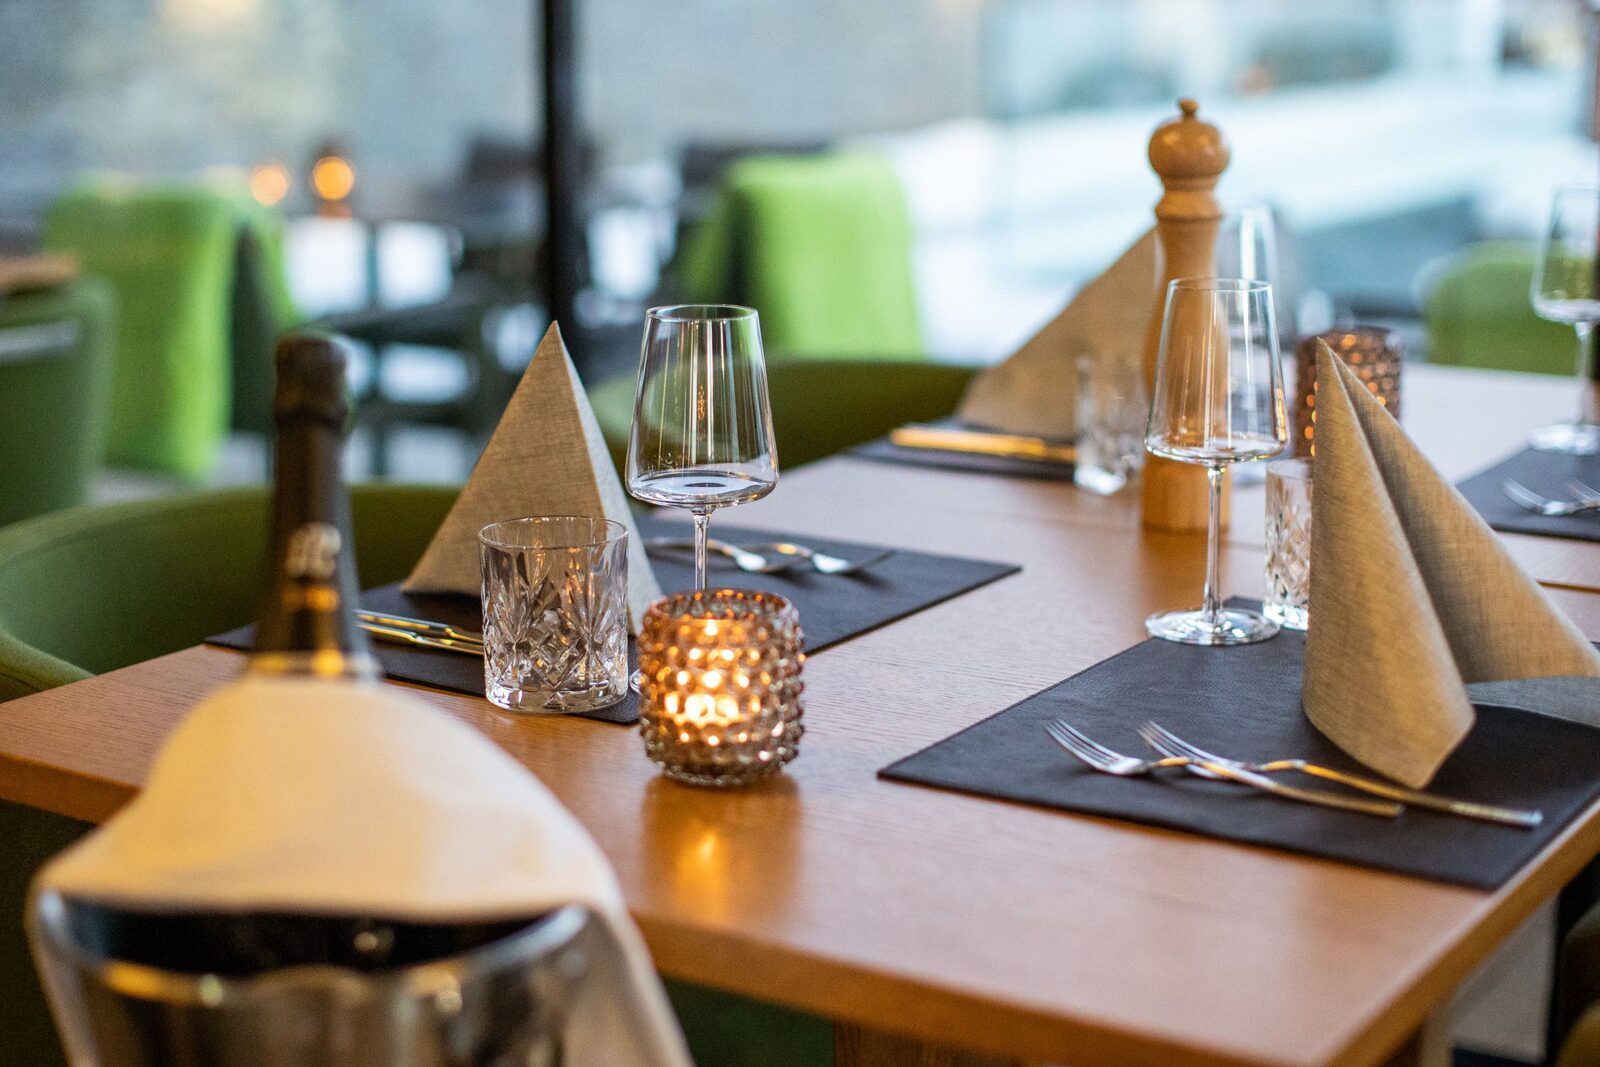 Off Course Alpenbrasserie & Bar gekroond tot Beste Cafetaria 2023 door Restaurant Guru